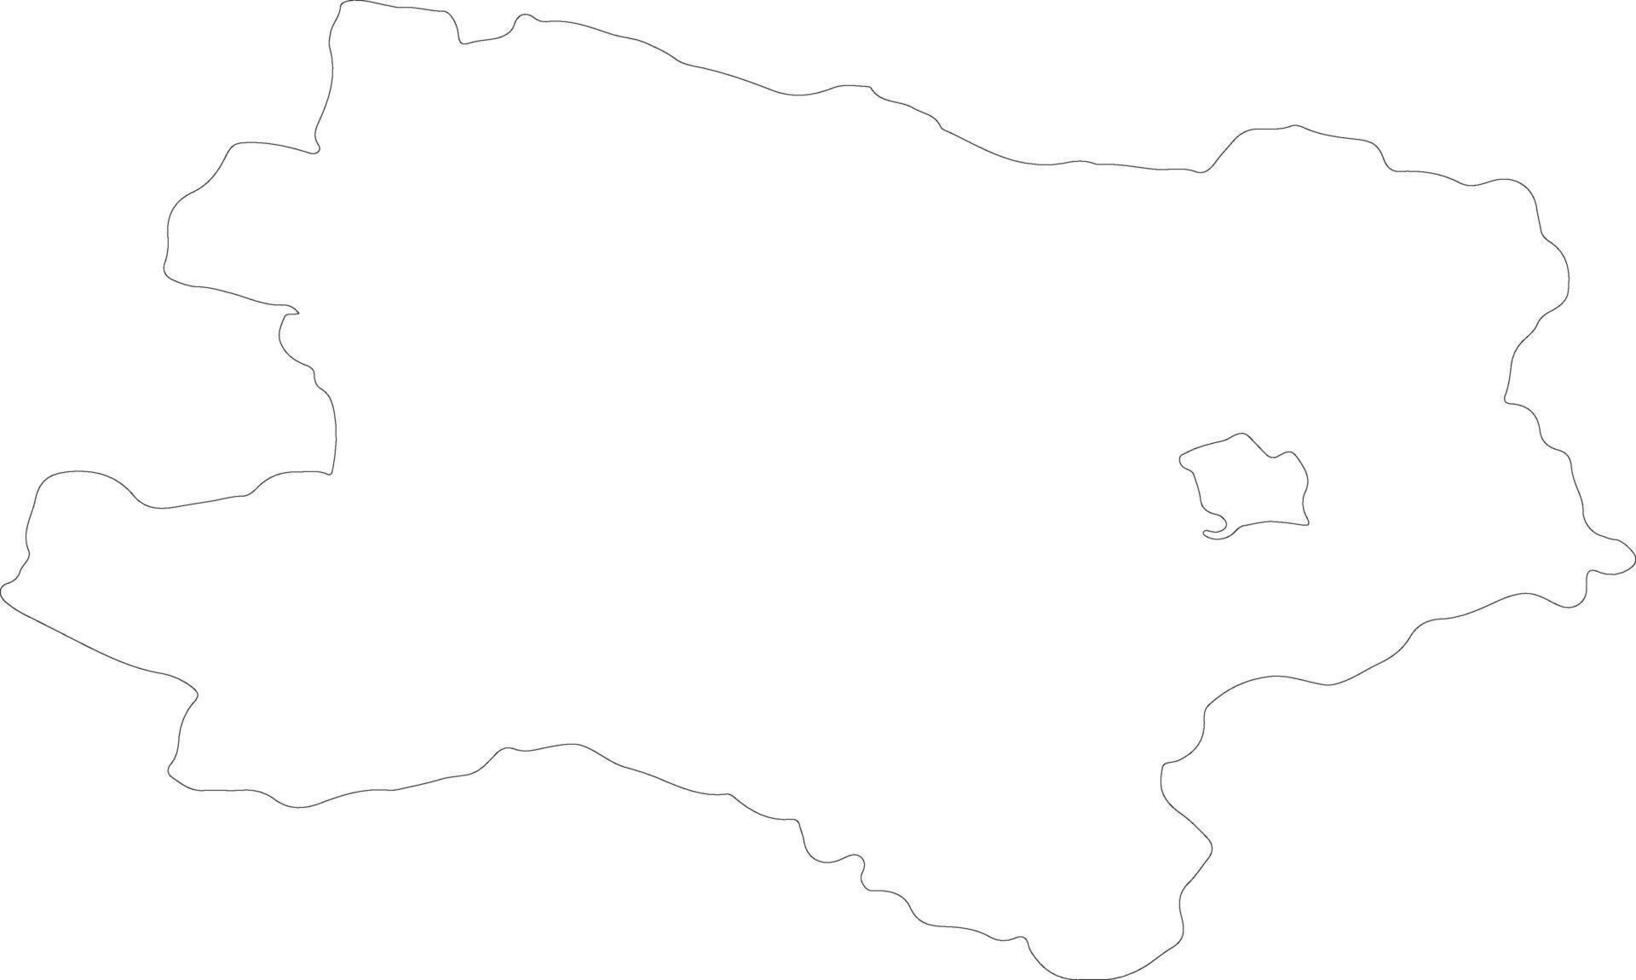 niederosterreich Austria schema carta geografica vettore